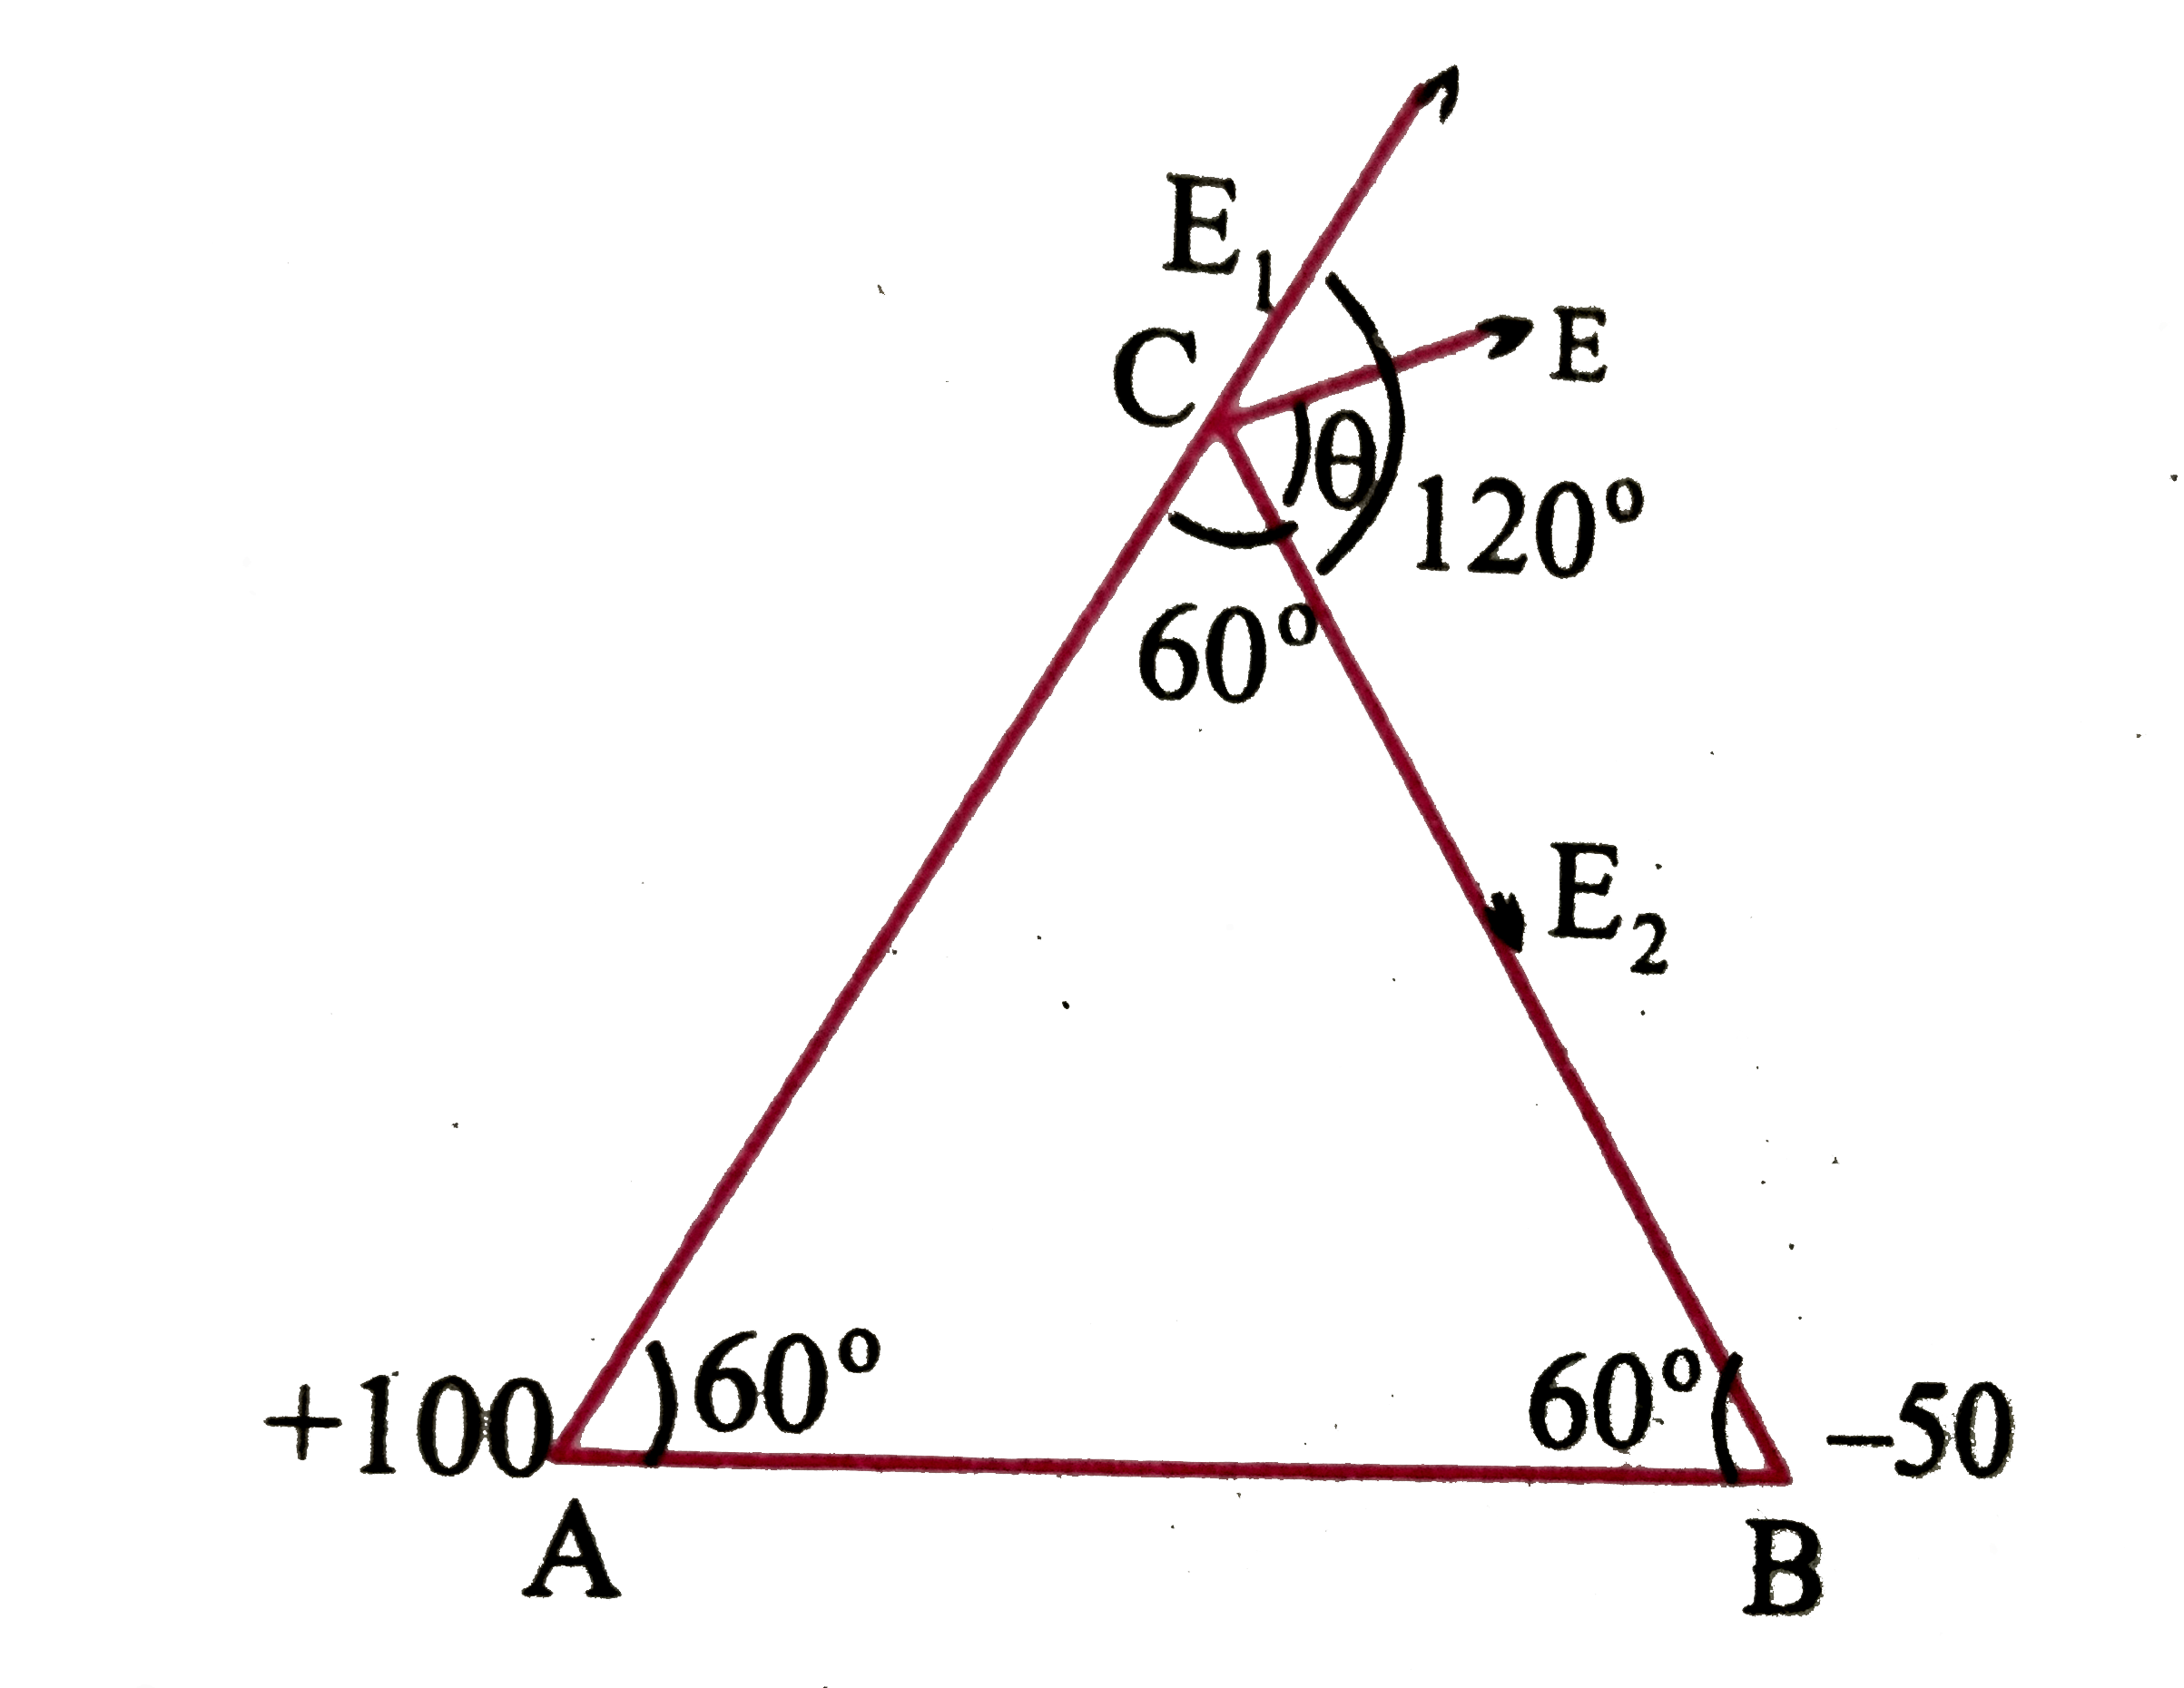 ABC एक समबाहु त्रिभुज है  जिसकी प्रत्येक भुजा की लम्बाई 5 सेमी है। A पर +100  स्थैत कूलॉम तथा B पर -50 स्थैत कूलॉम का आवेश स्थित है। बिंदु C पर विद्युत क्षेत्र की तीव्रता तथा दिशा ज्ञात कीजिए ।